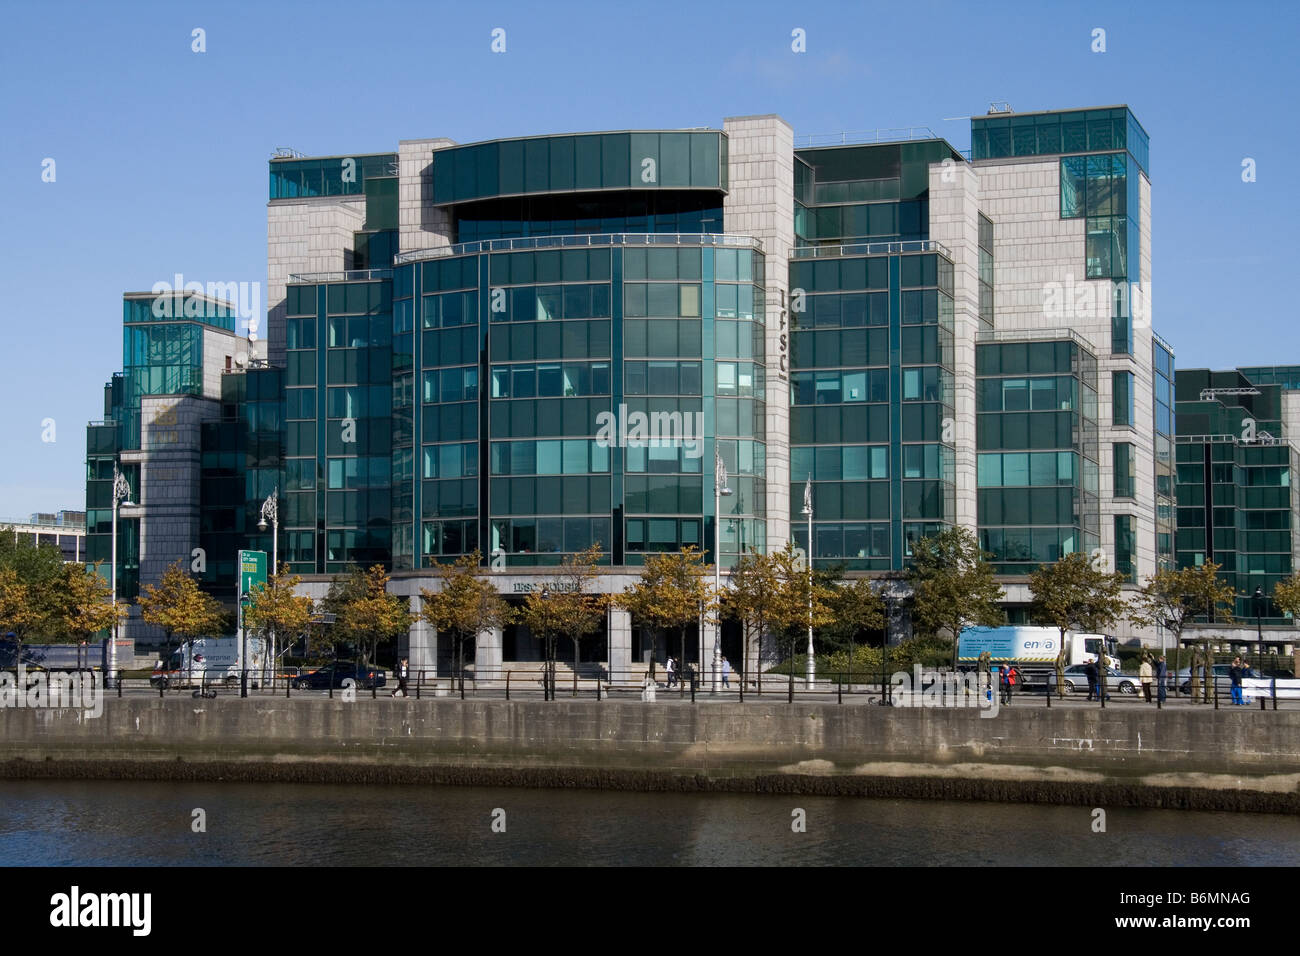 International Centre von der Allied Irish Bank in Dublin am Custom House Quay, an den Ufern des Liffey. Stockfoto